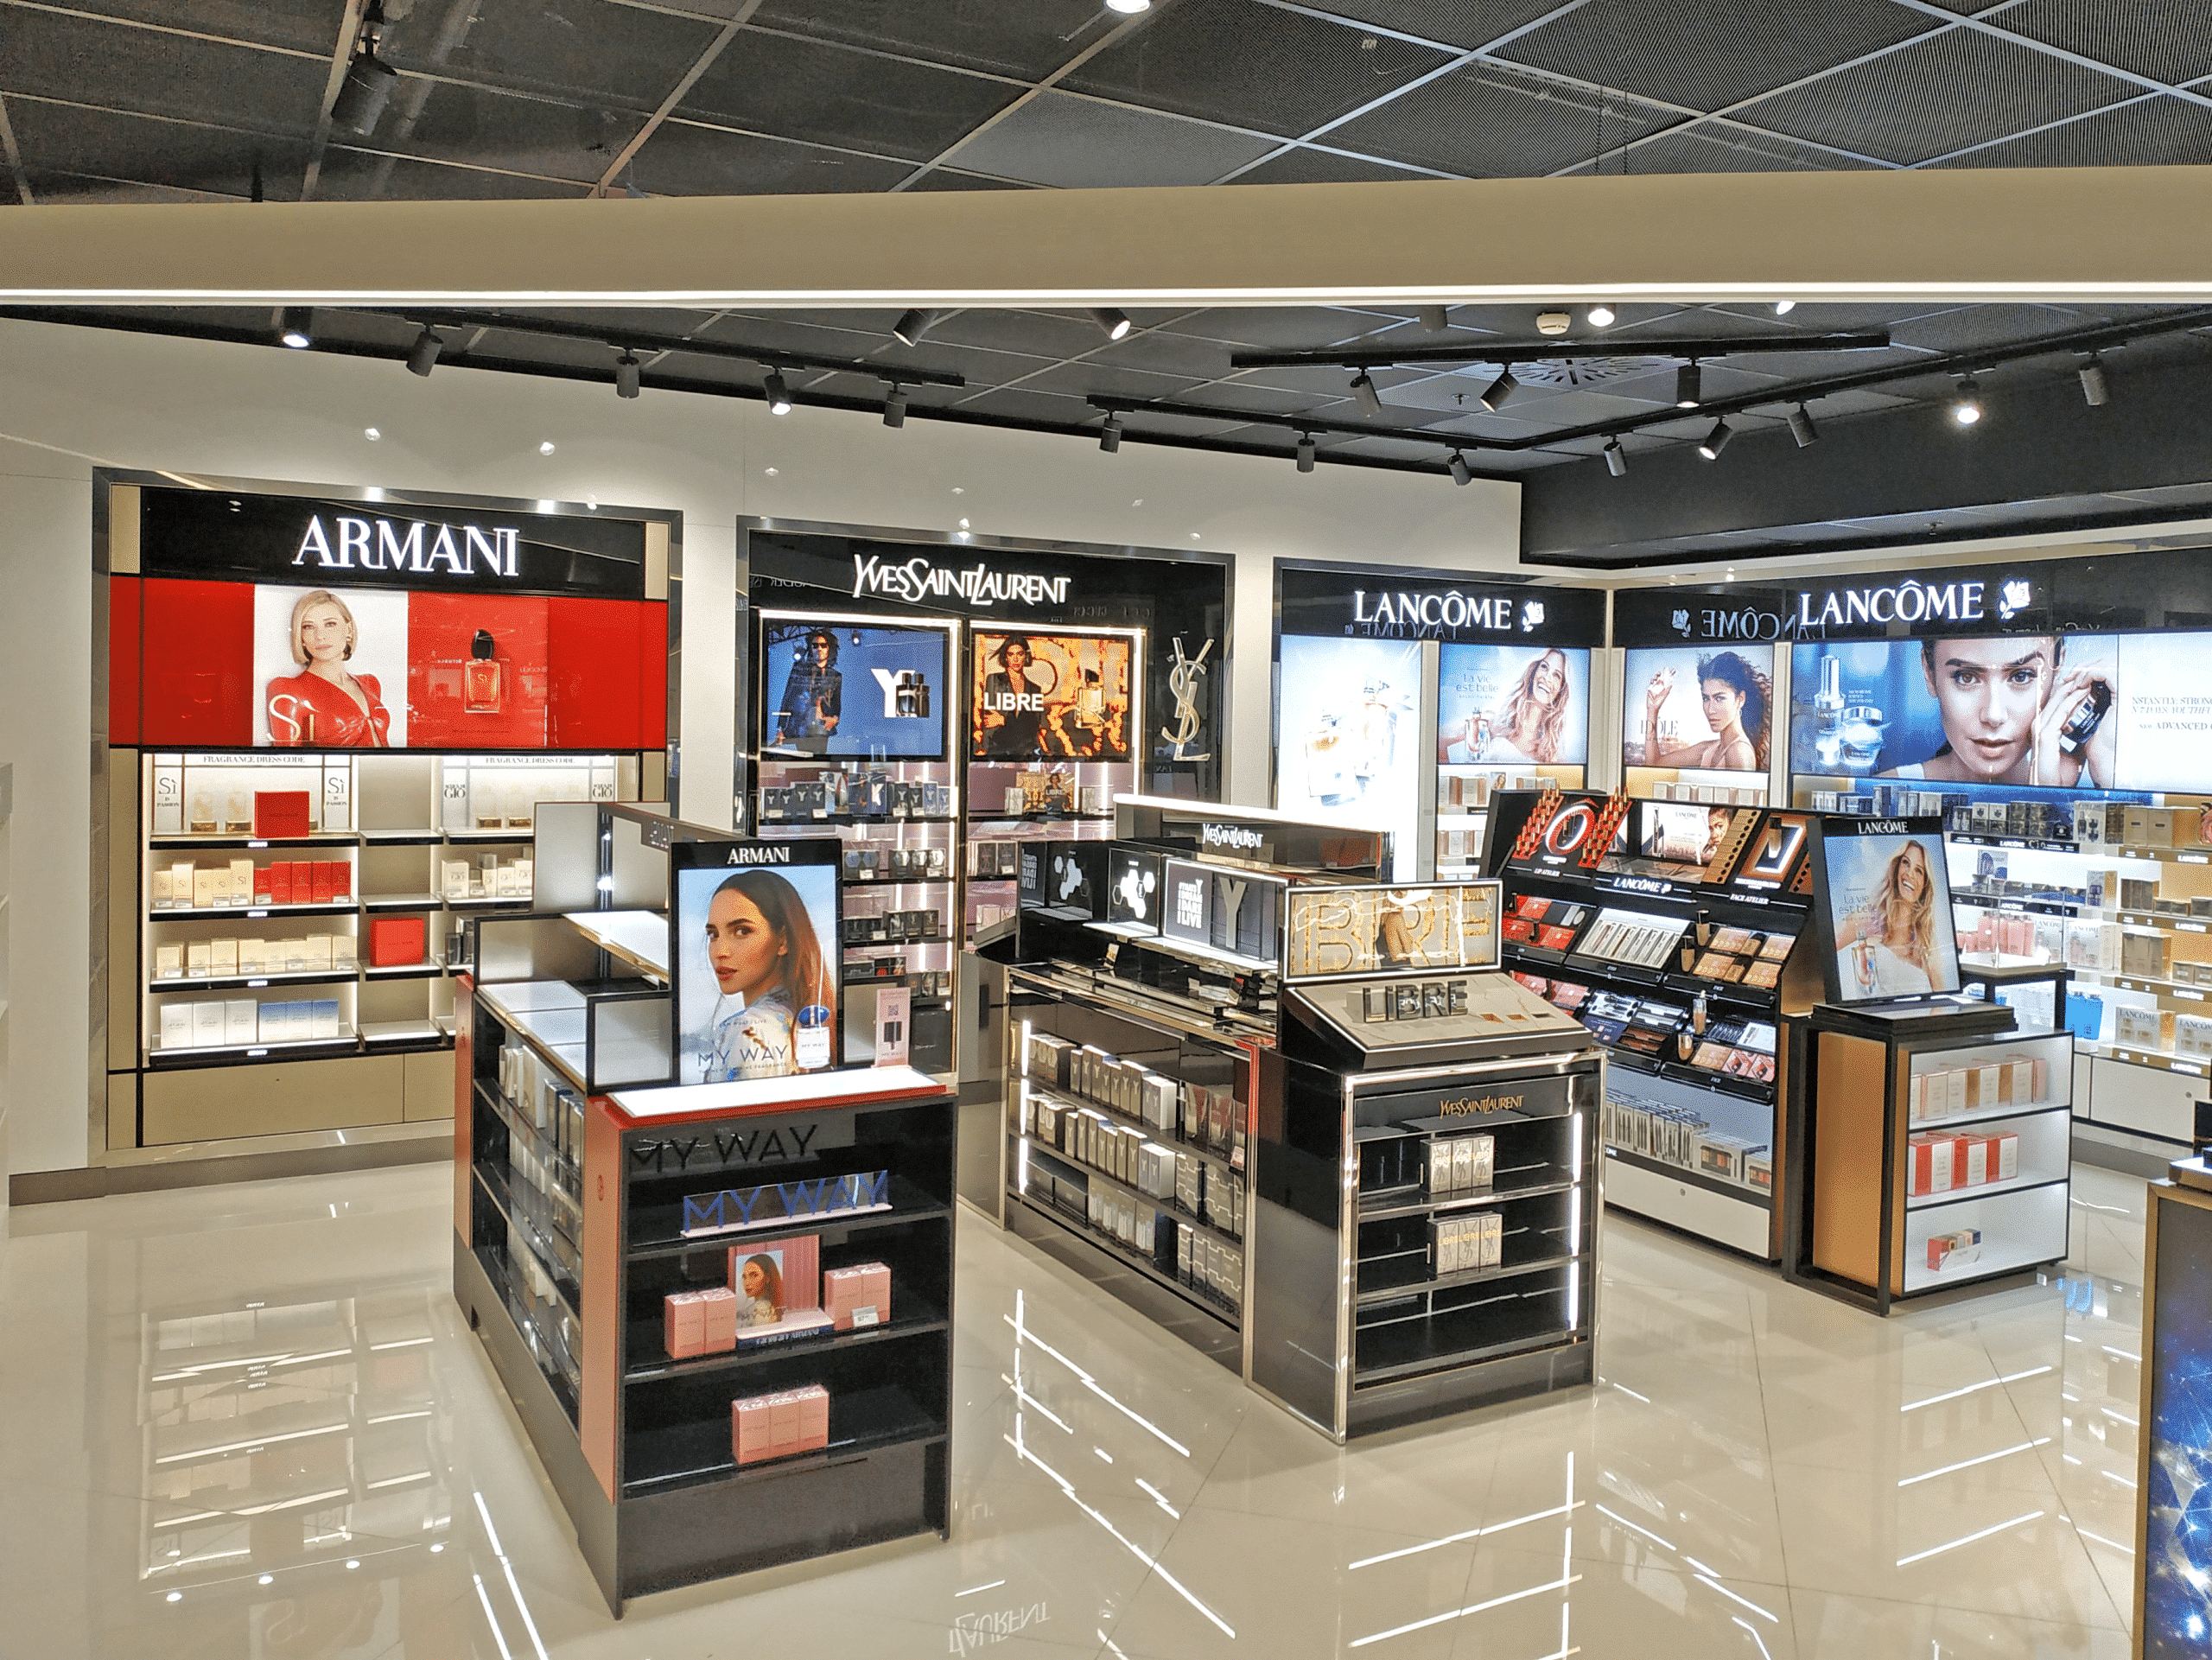 Armani and lancome shop at milan airport